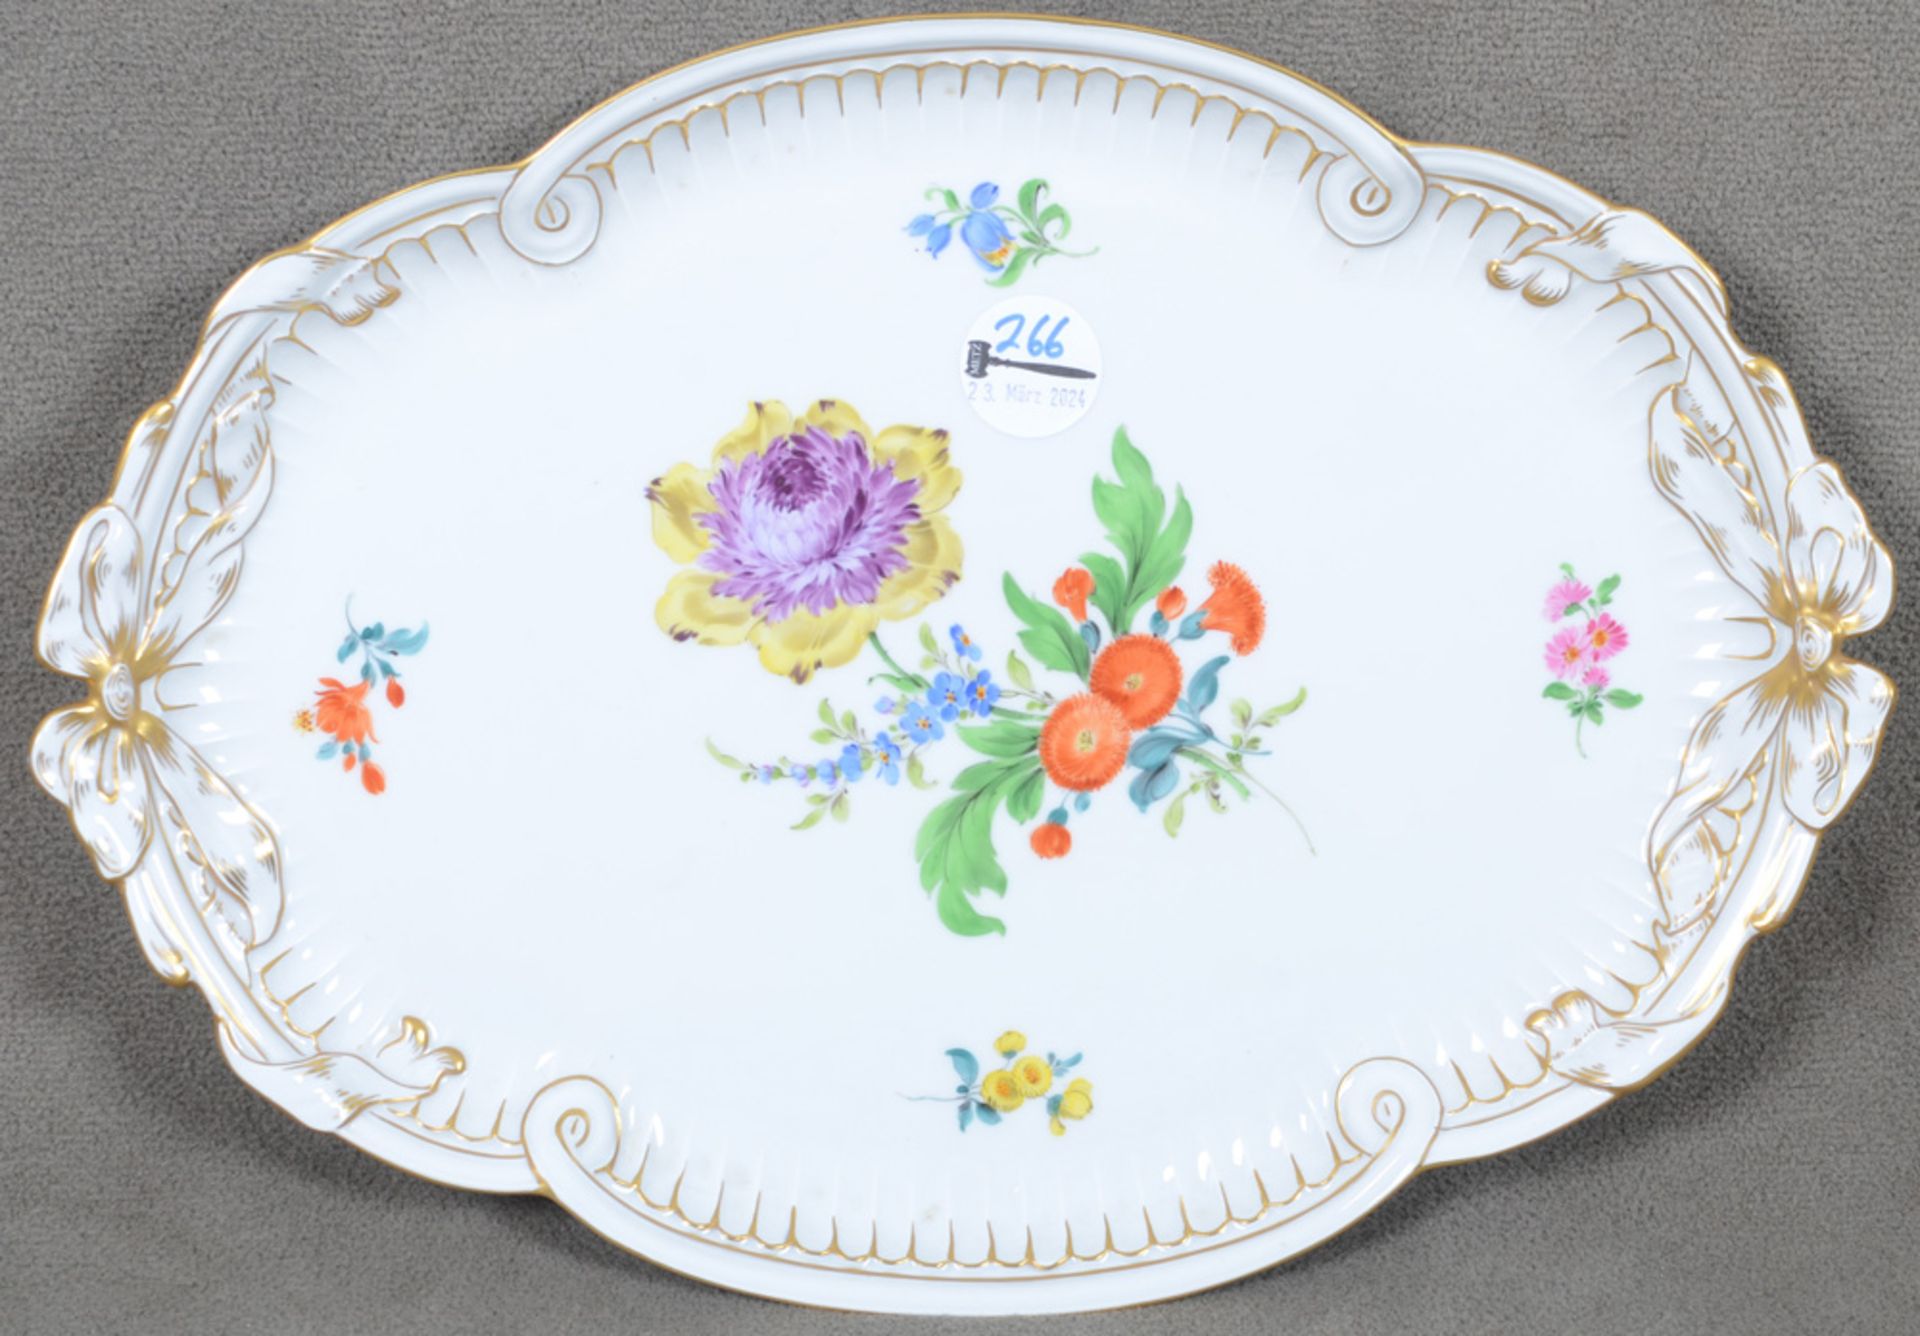 Ovale Platte. Meissen 20. Jh. Porzellan, bunt bemalt mit Blumen; am Boden unterglasurblaue Schwerter